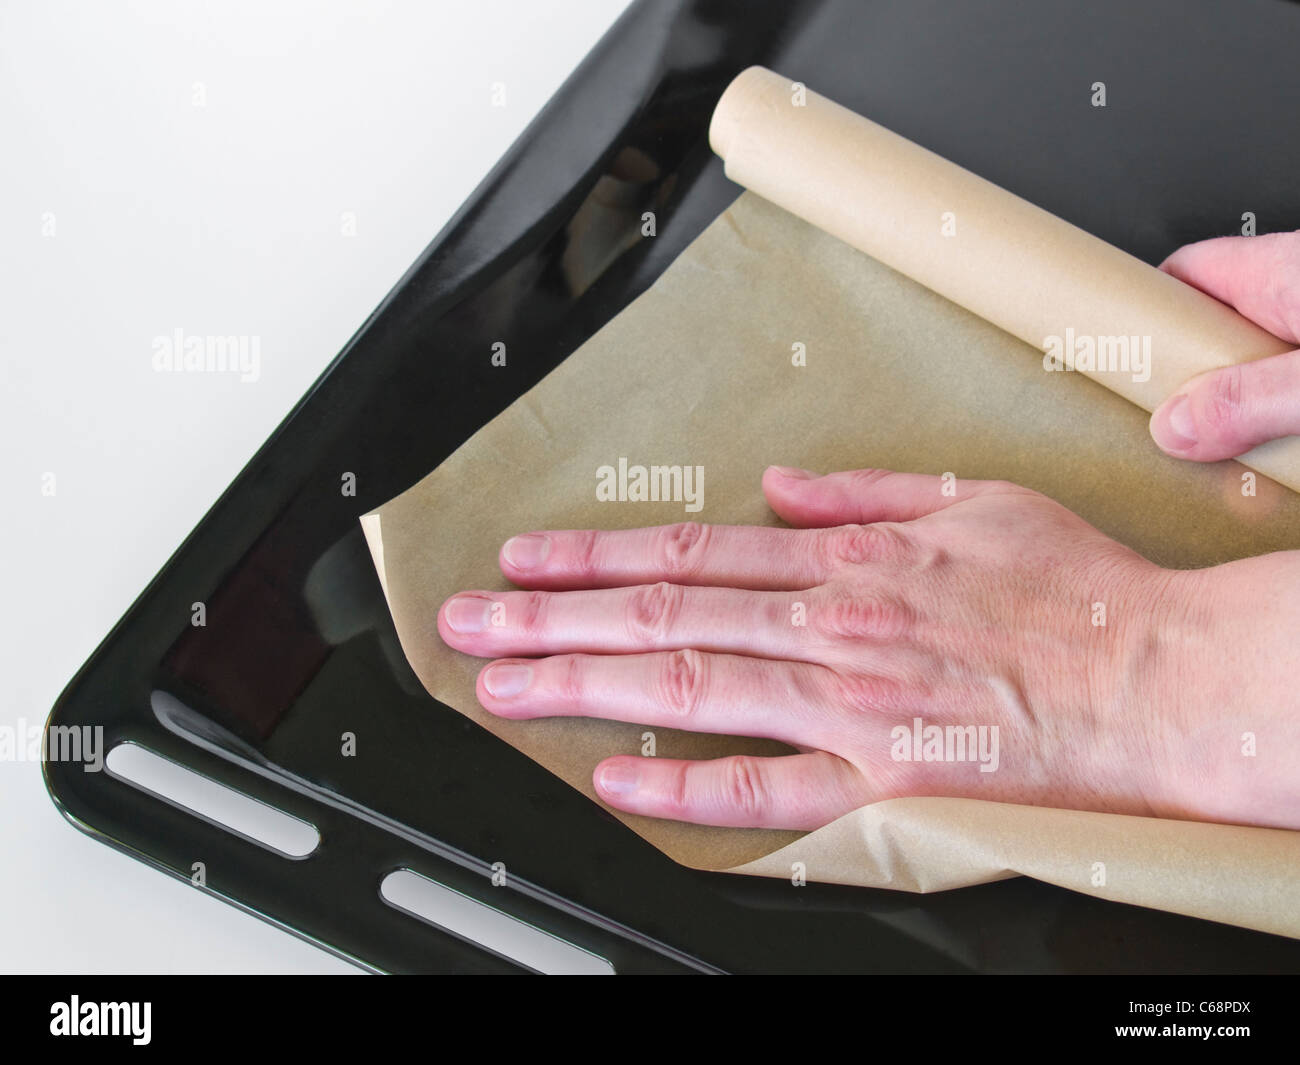 Auf ein Backblech Backpapier gelegt wird | Une personne mettre un peu de papier cuisson sur une plaque à pâtisserie Banque D'Images